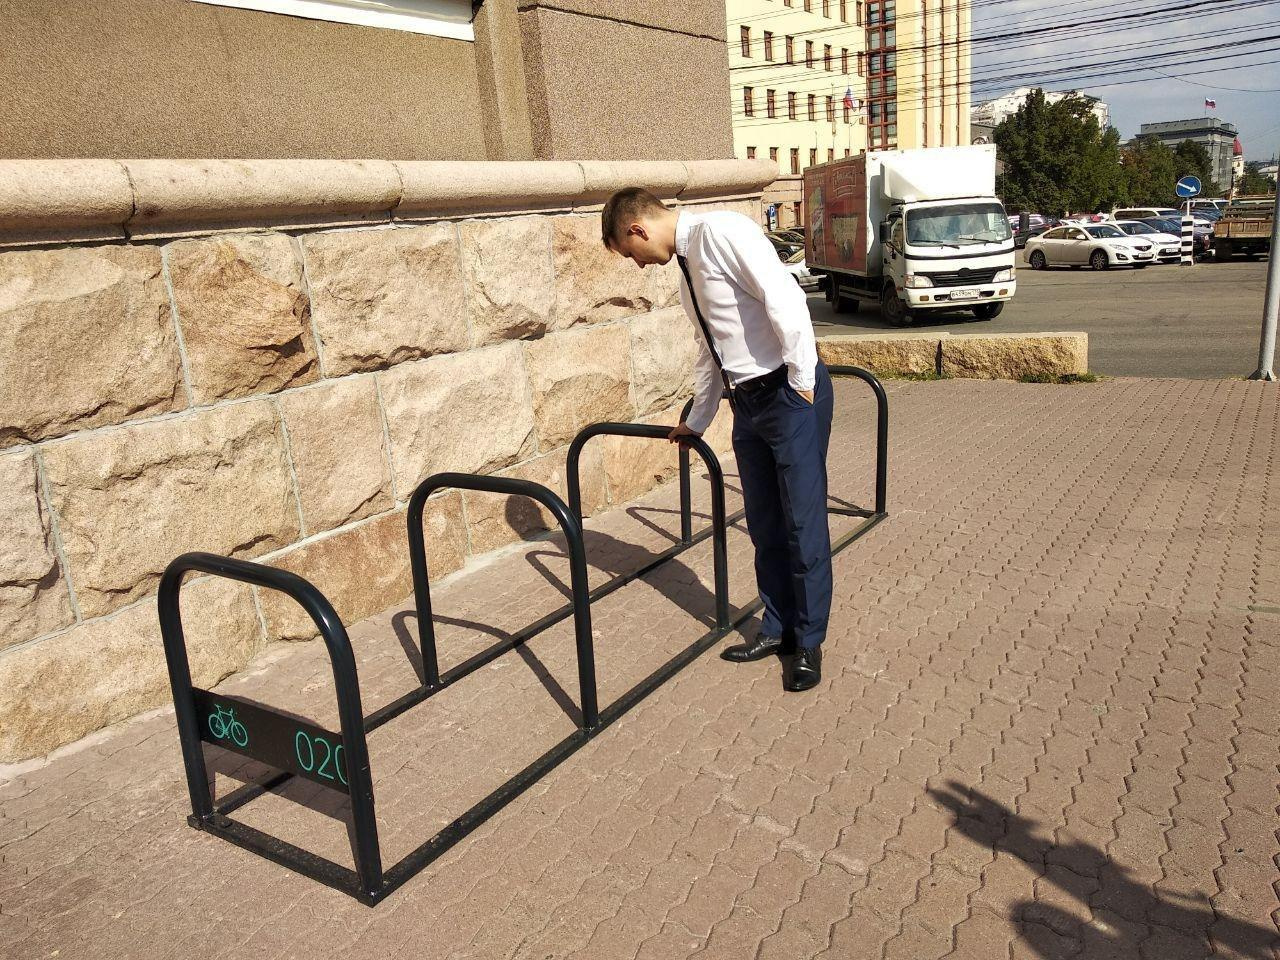 Вице-мэр по городской среде Александр Егоров презентовал на днях велопарковки у администрации. По его мнению, они удобные и отвечают современным требованиям